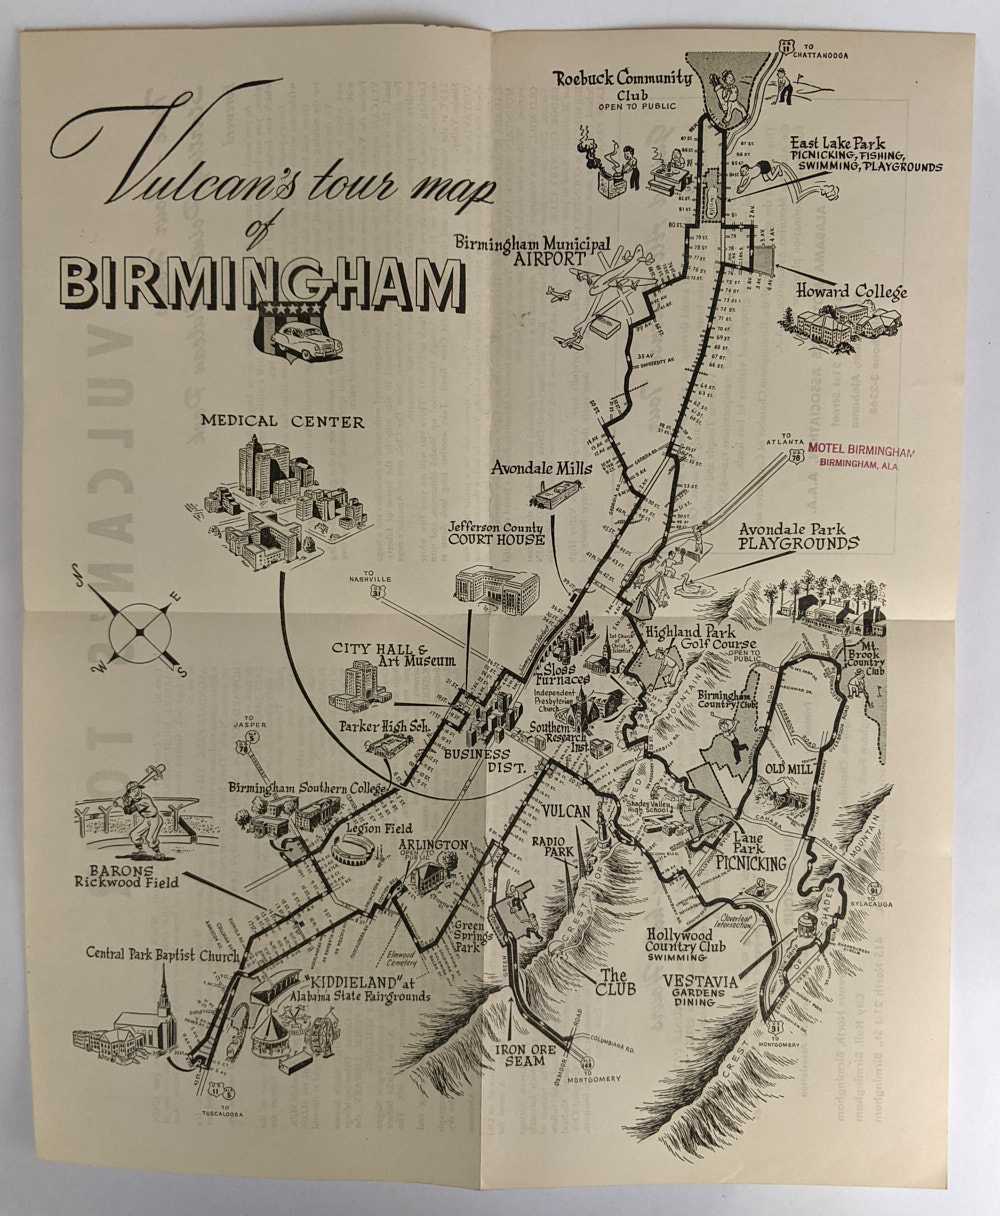 Alabama Motorists Association - Vulcan's Tour Map of Birmingham